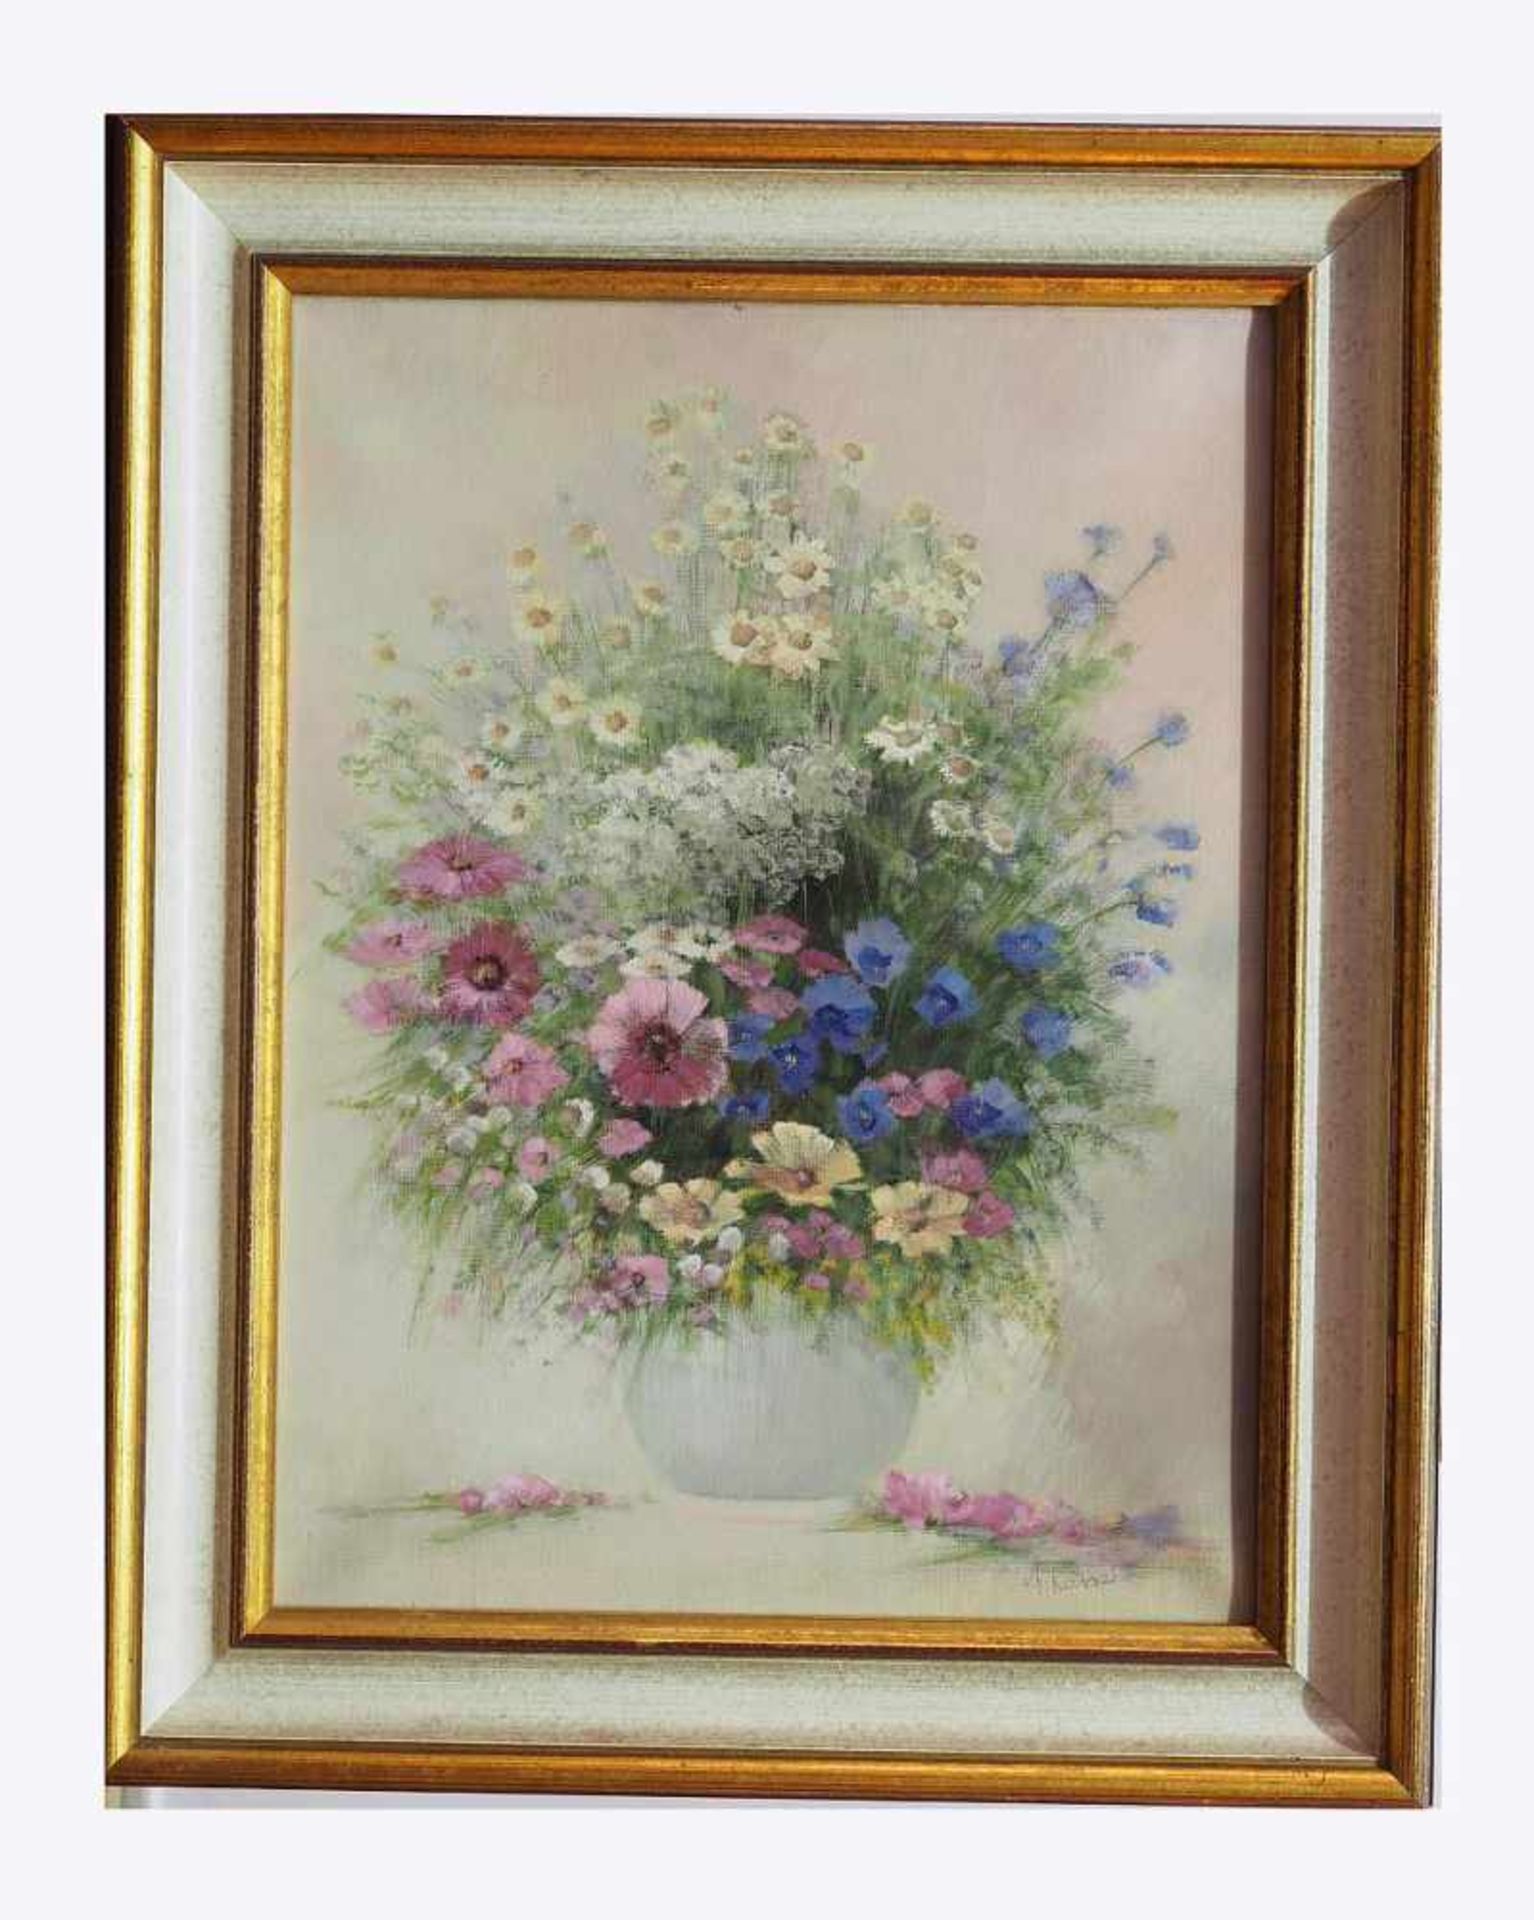 KAISER, A. KAISER, A. 20. Jahrhundert. Sommerliches Blumenstillleben in Vase. Öl auf Leinwand, - Bild 3 aus 6